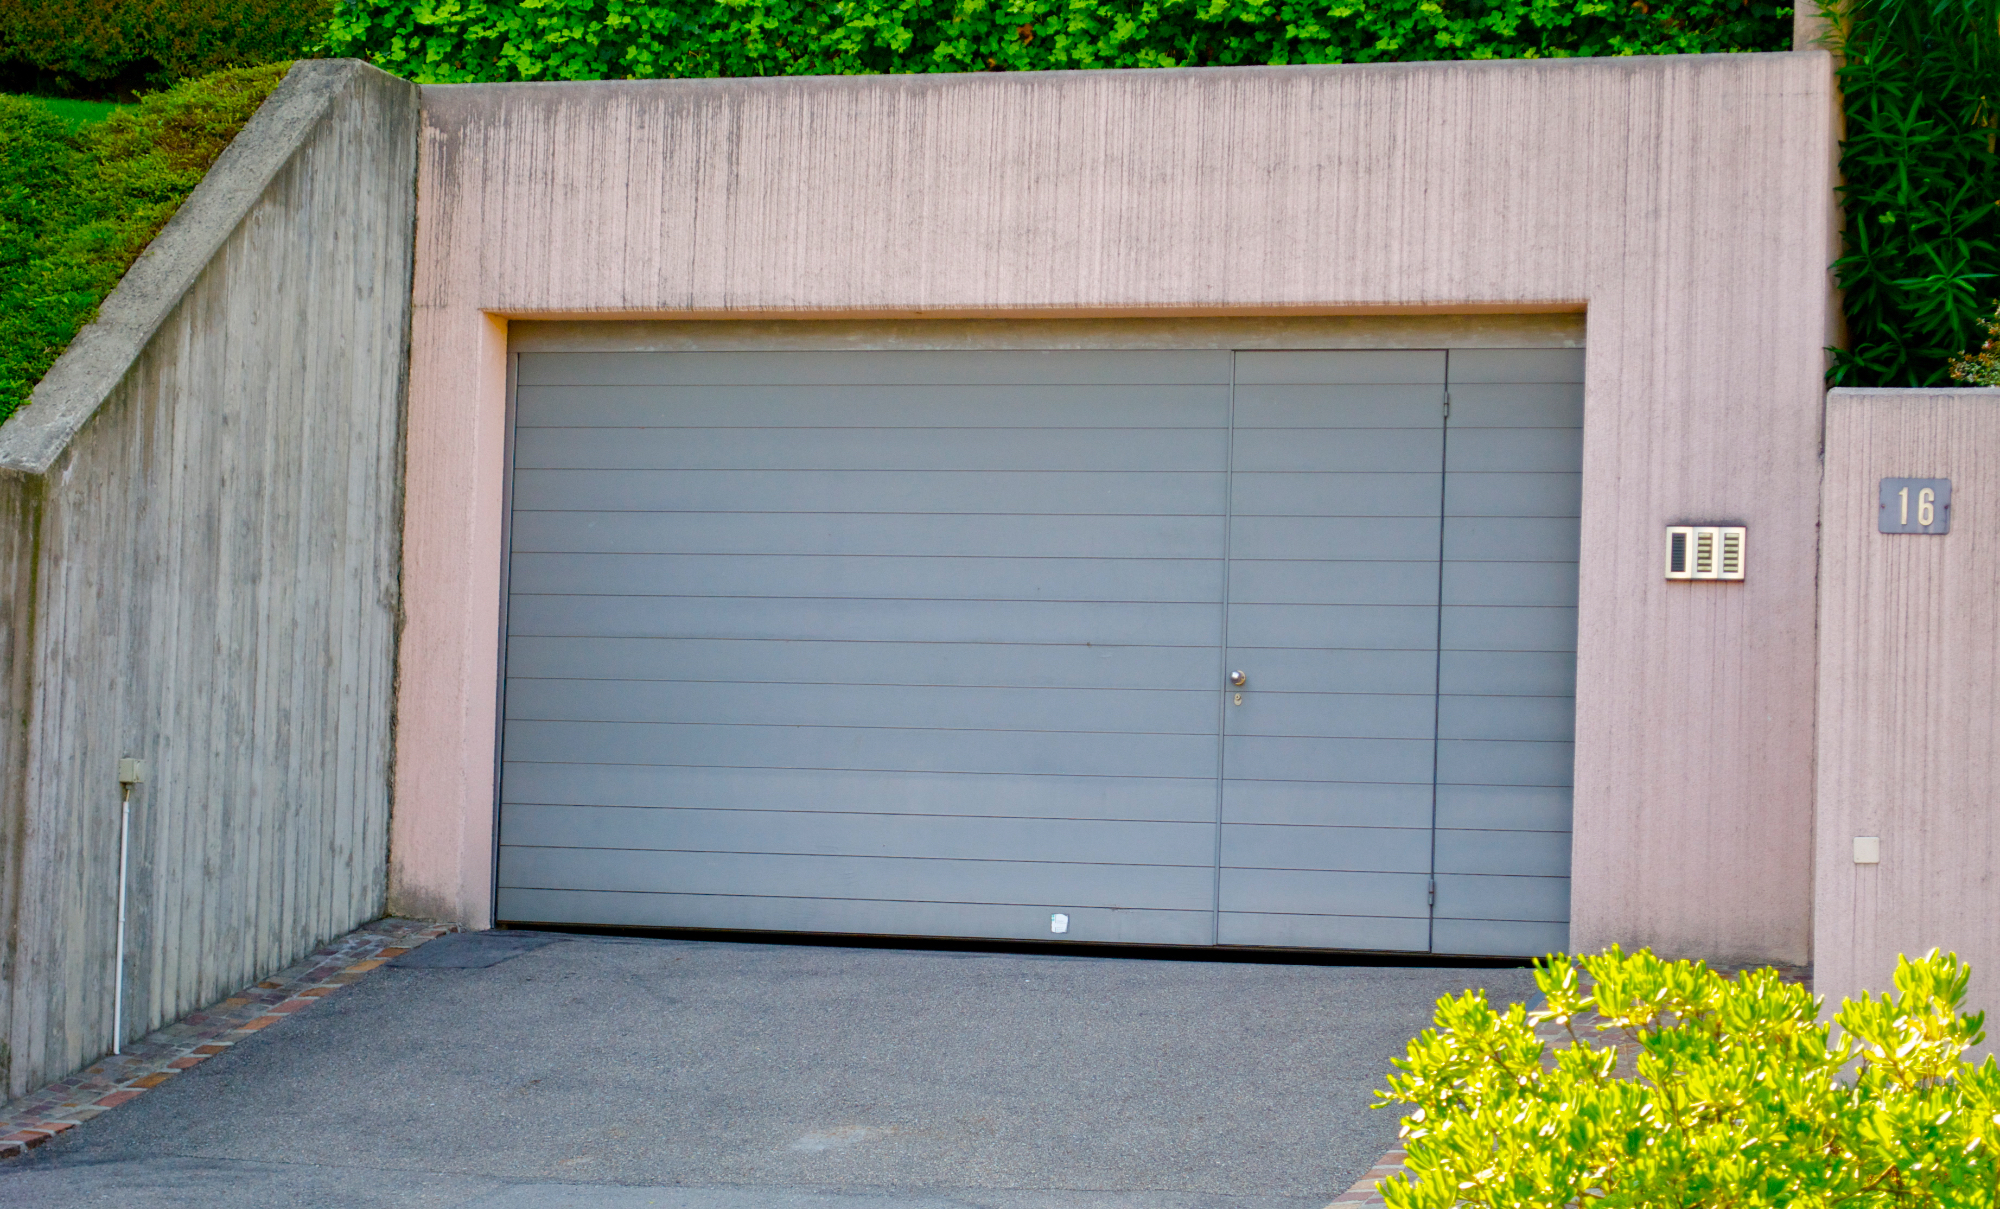 Garažna vrata se danes že močno razlikujejo med sabo